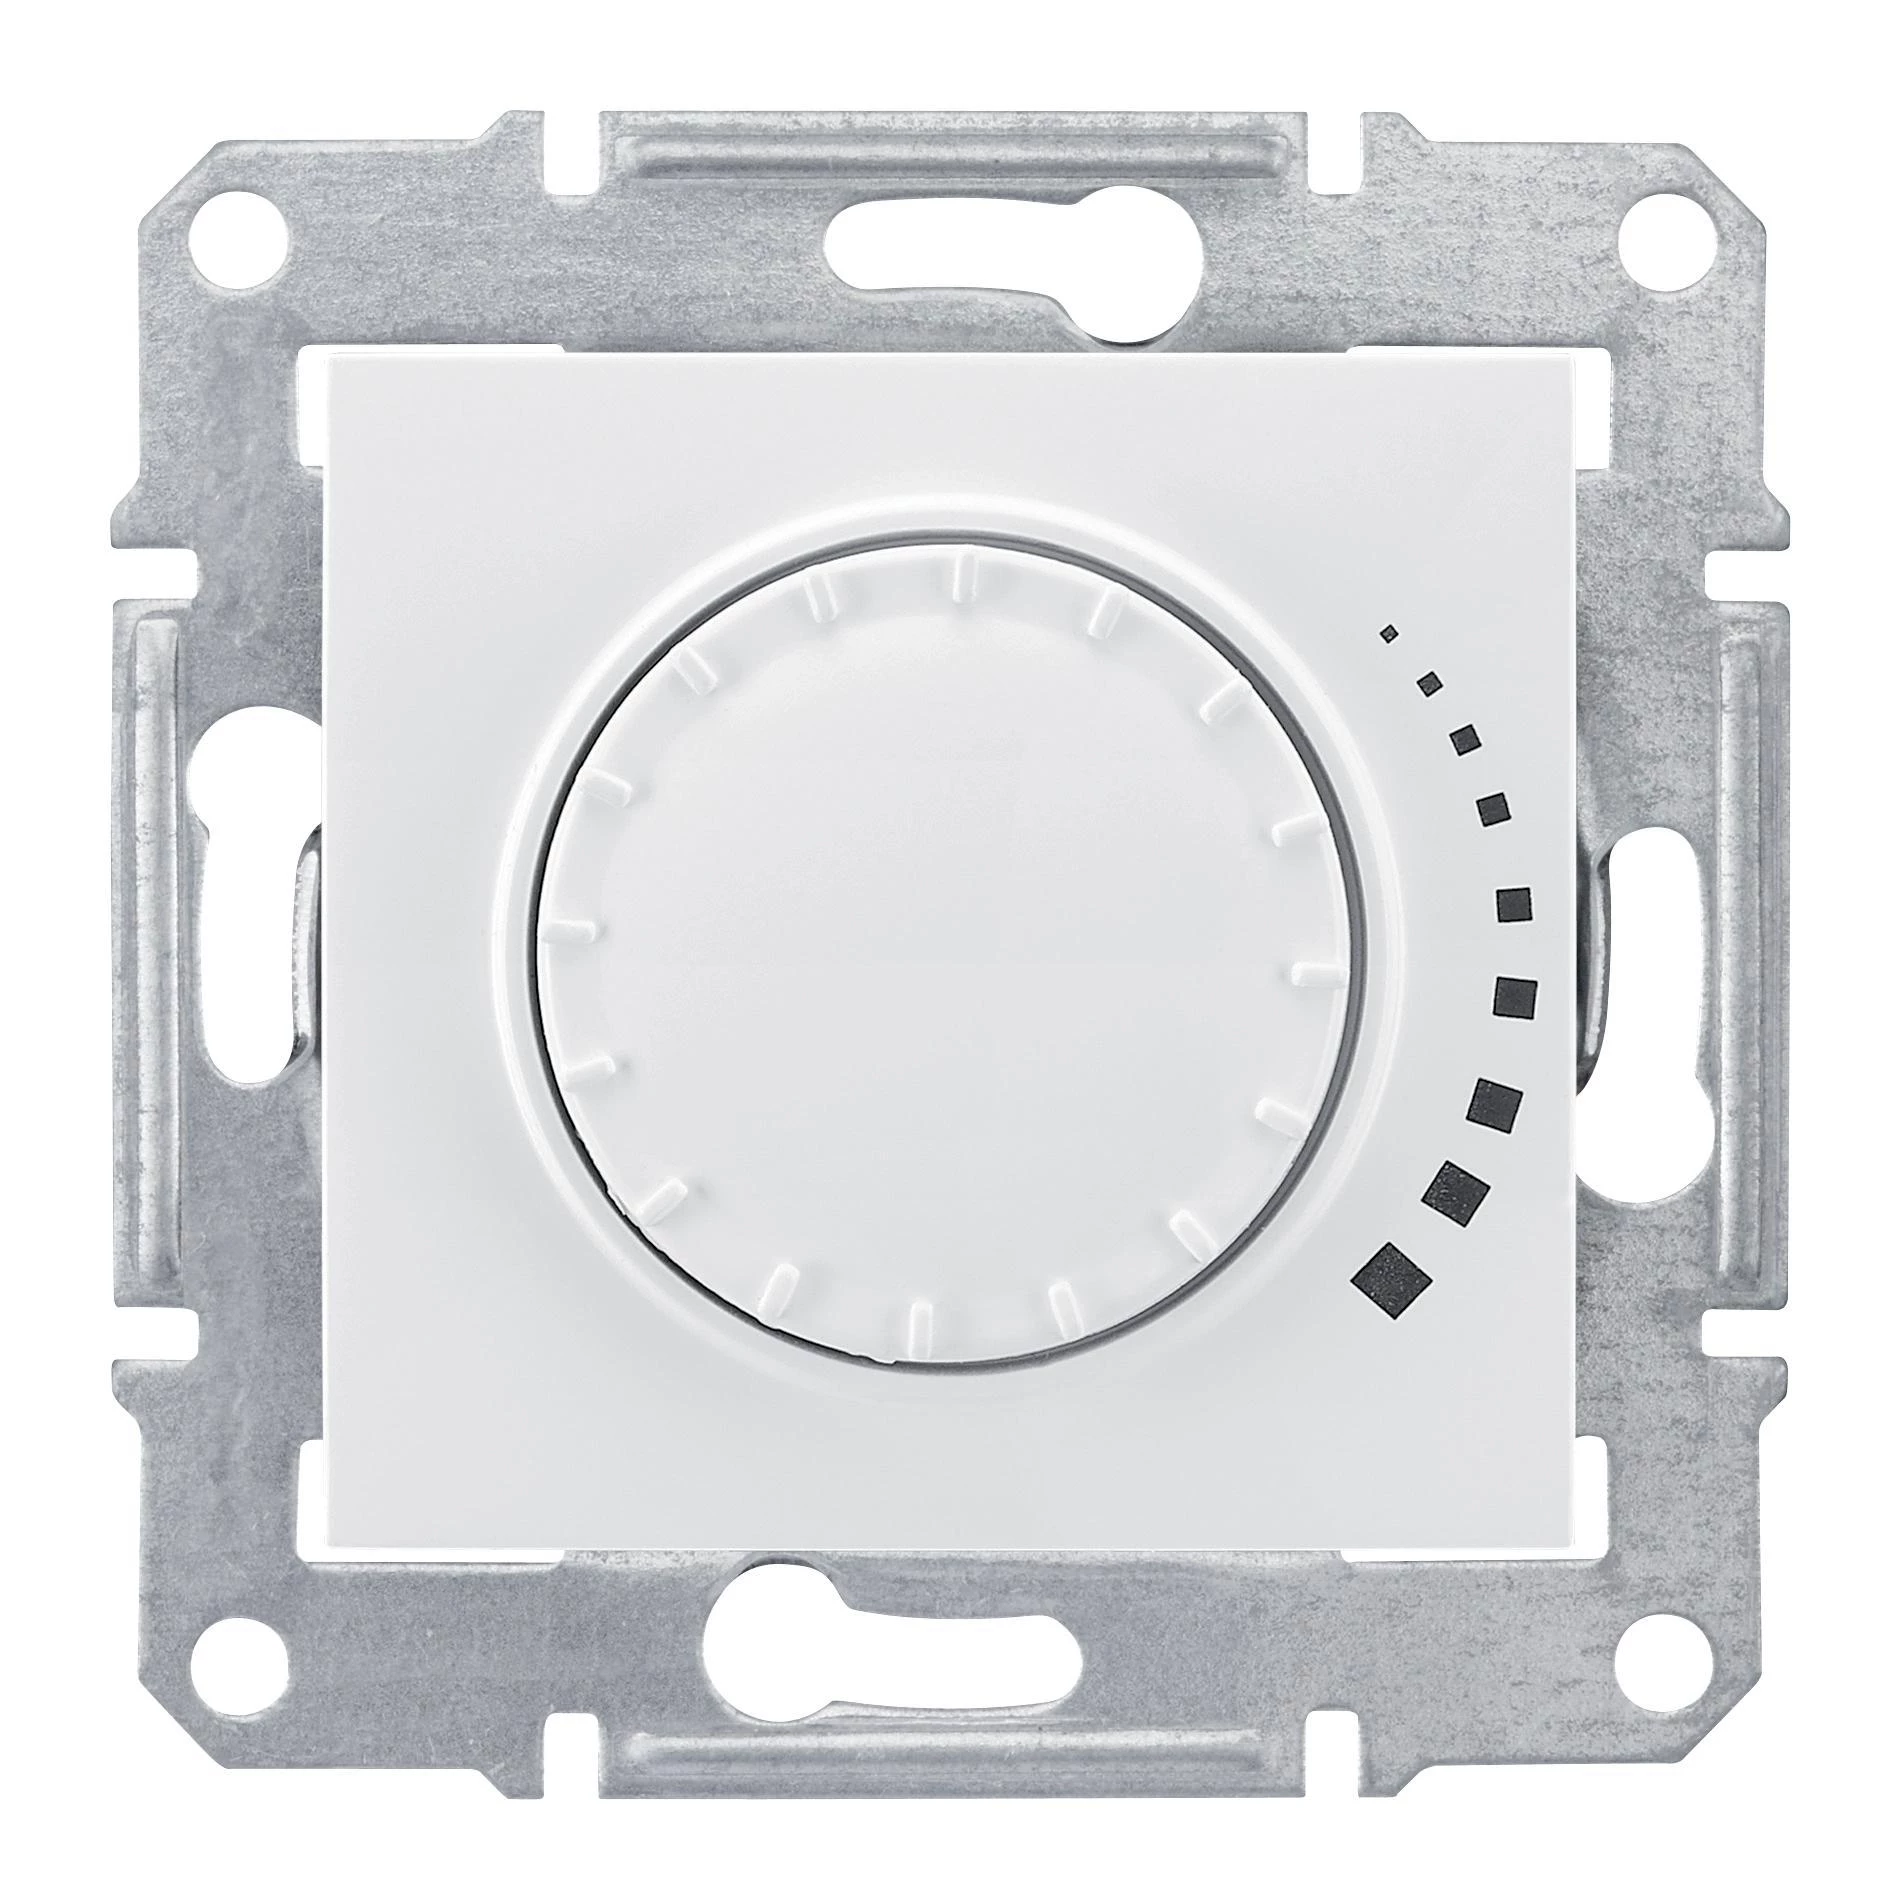  артикул SDN2201221 название Светорегулятор поворотно-нажимной 400Вт LED (универсальный) , Белый, серия Sedna, Schneider Electric